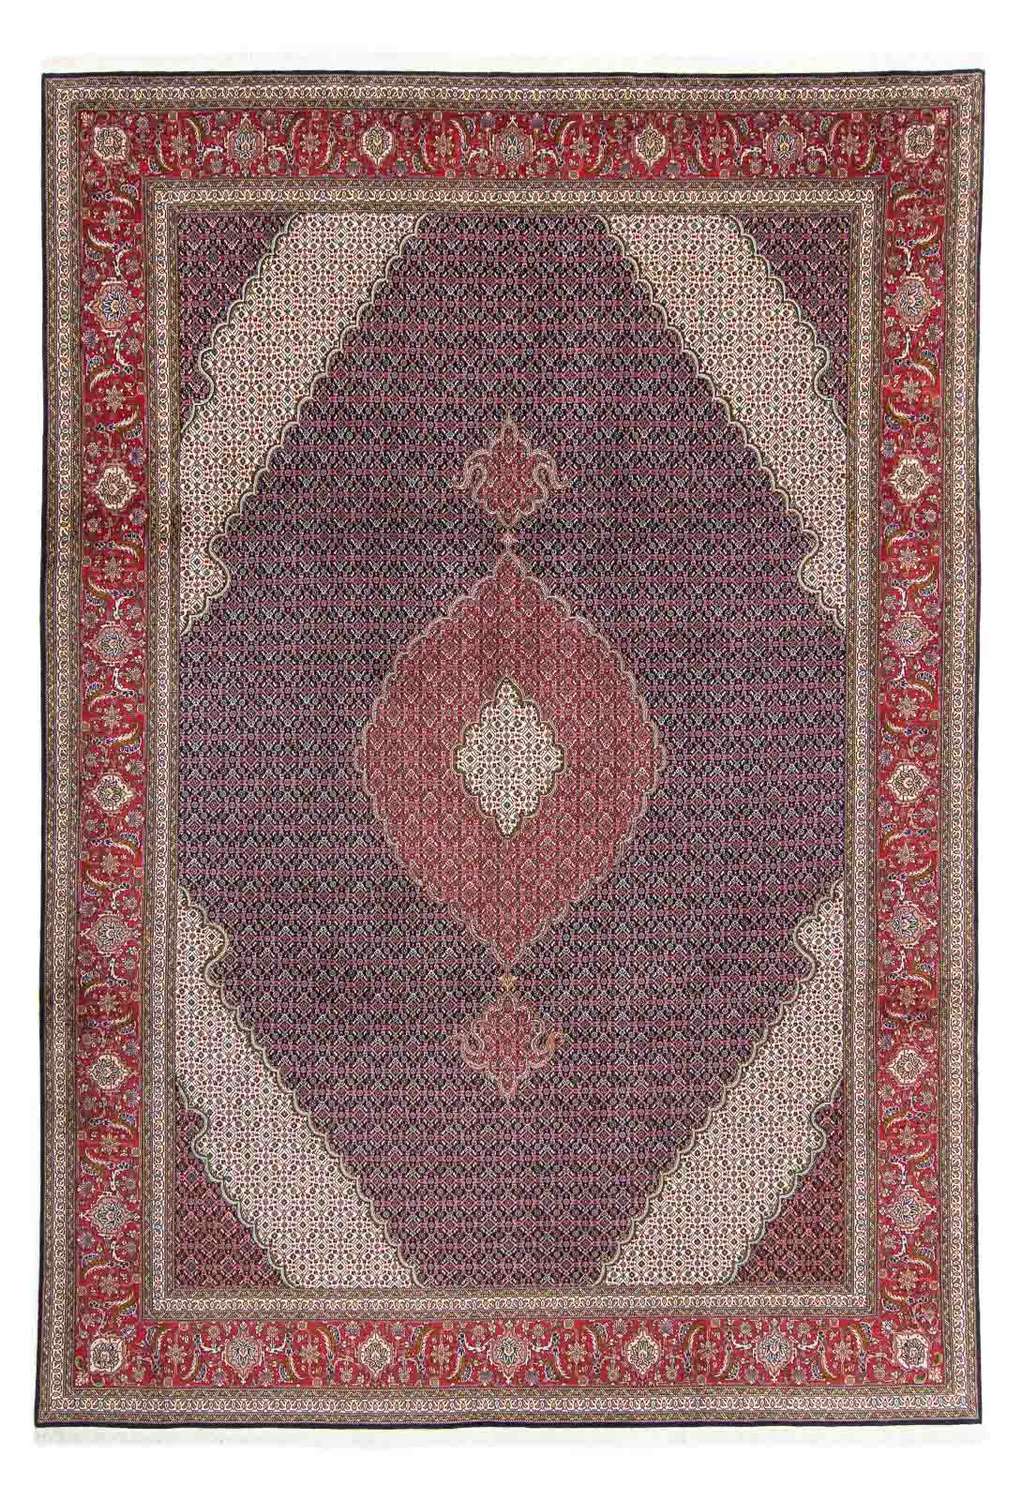 Dywan perski - Tabriz - 360 x 252 cm - czerwony